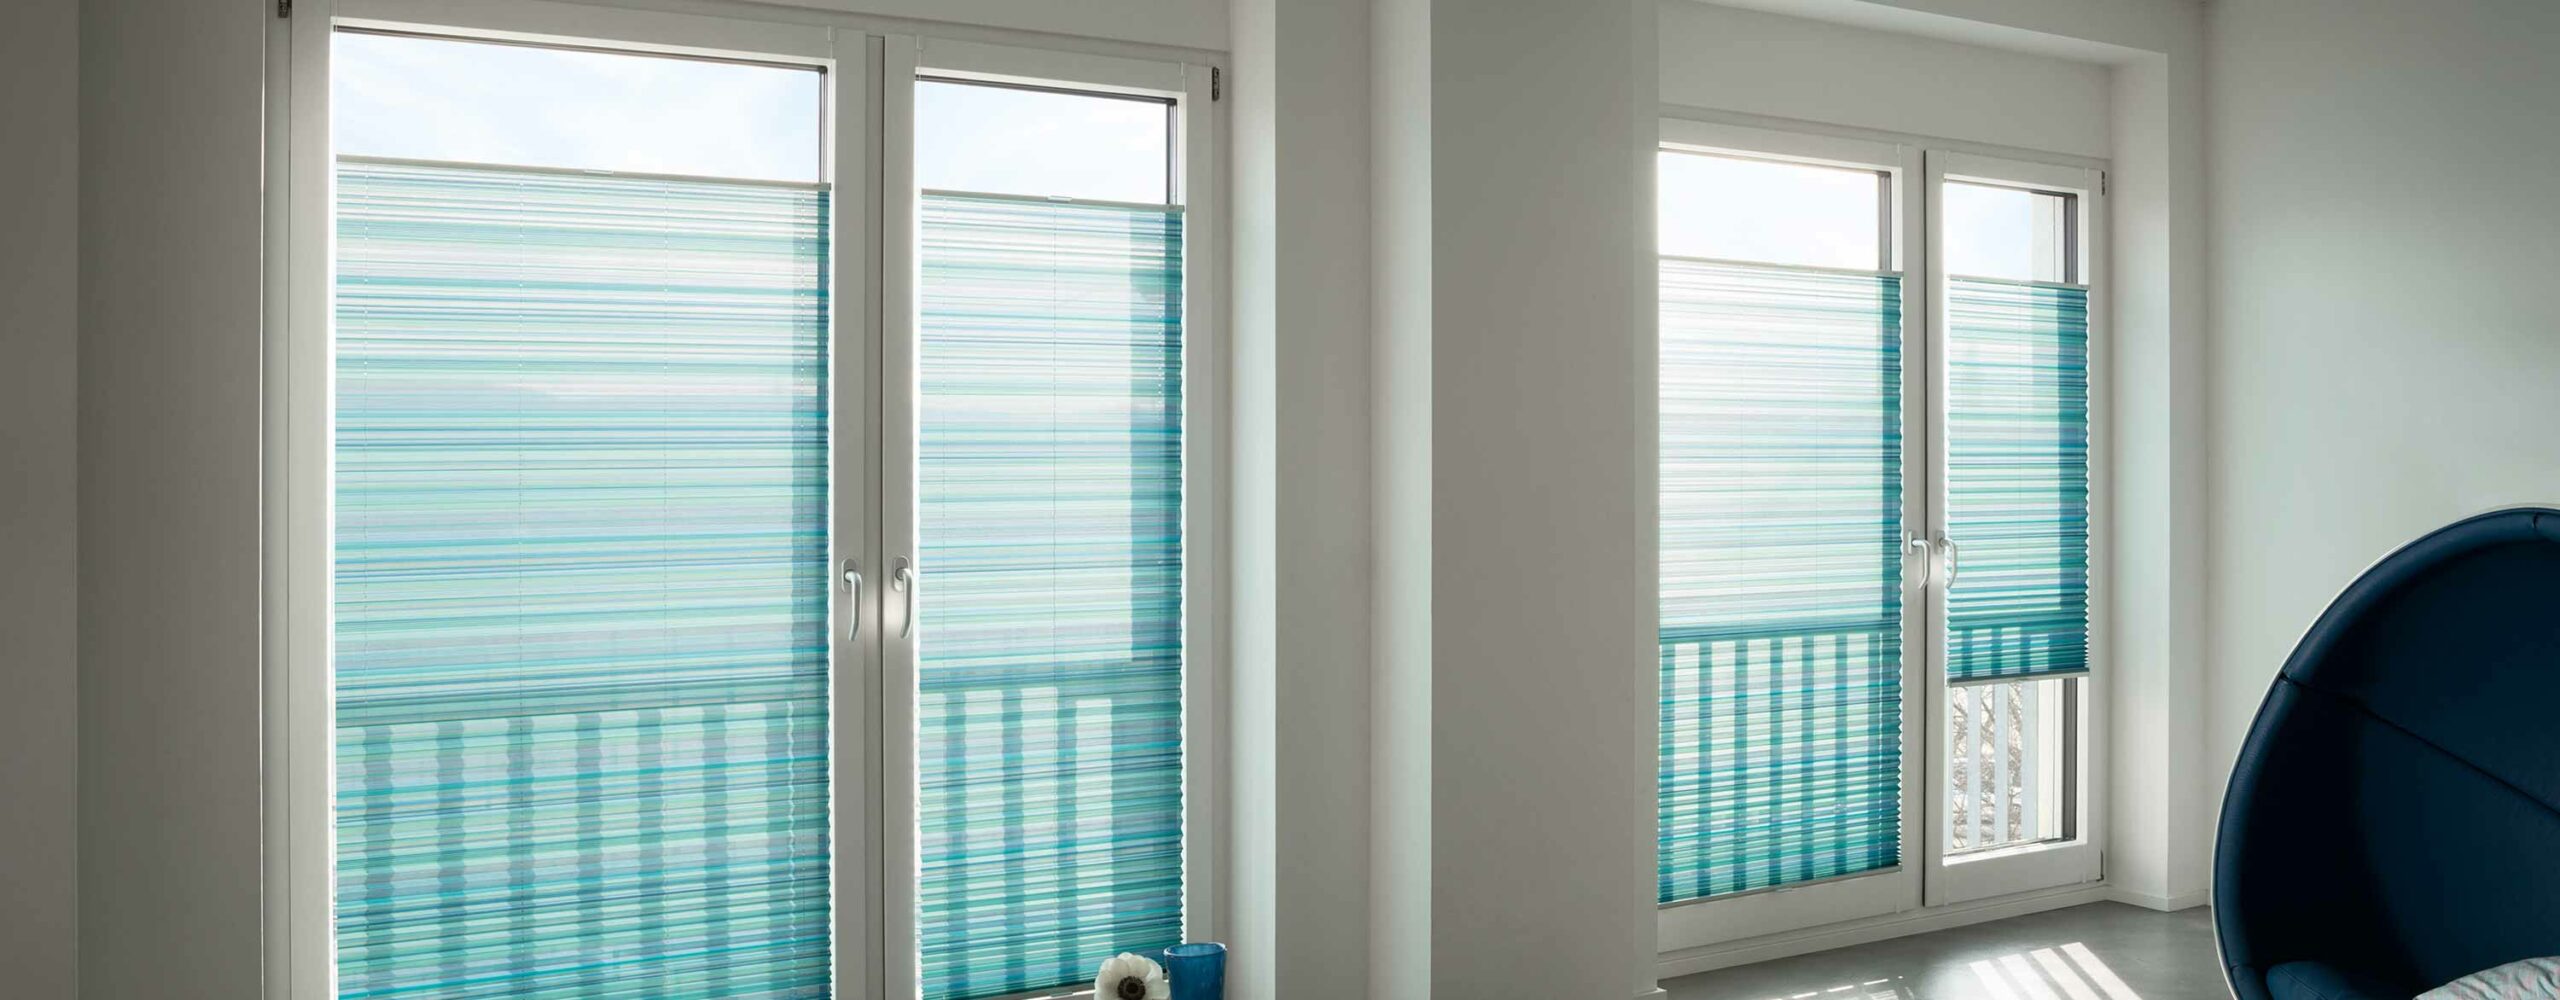 sonnenschutz nürtingen wohnzimmer doppelfenster mhz hachtel plisseees in blau bei bleher raumausstatter nürtingen